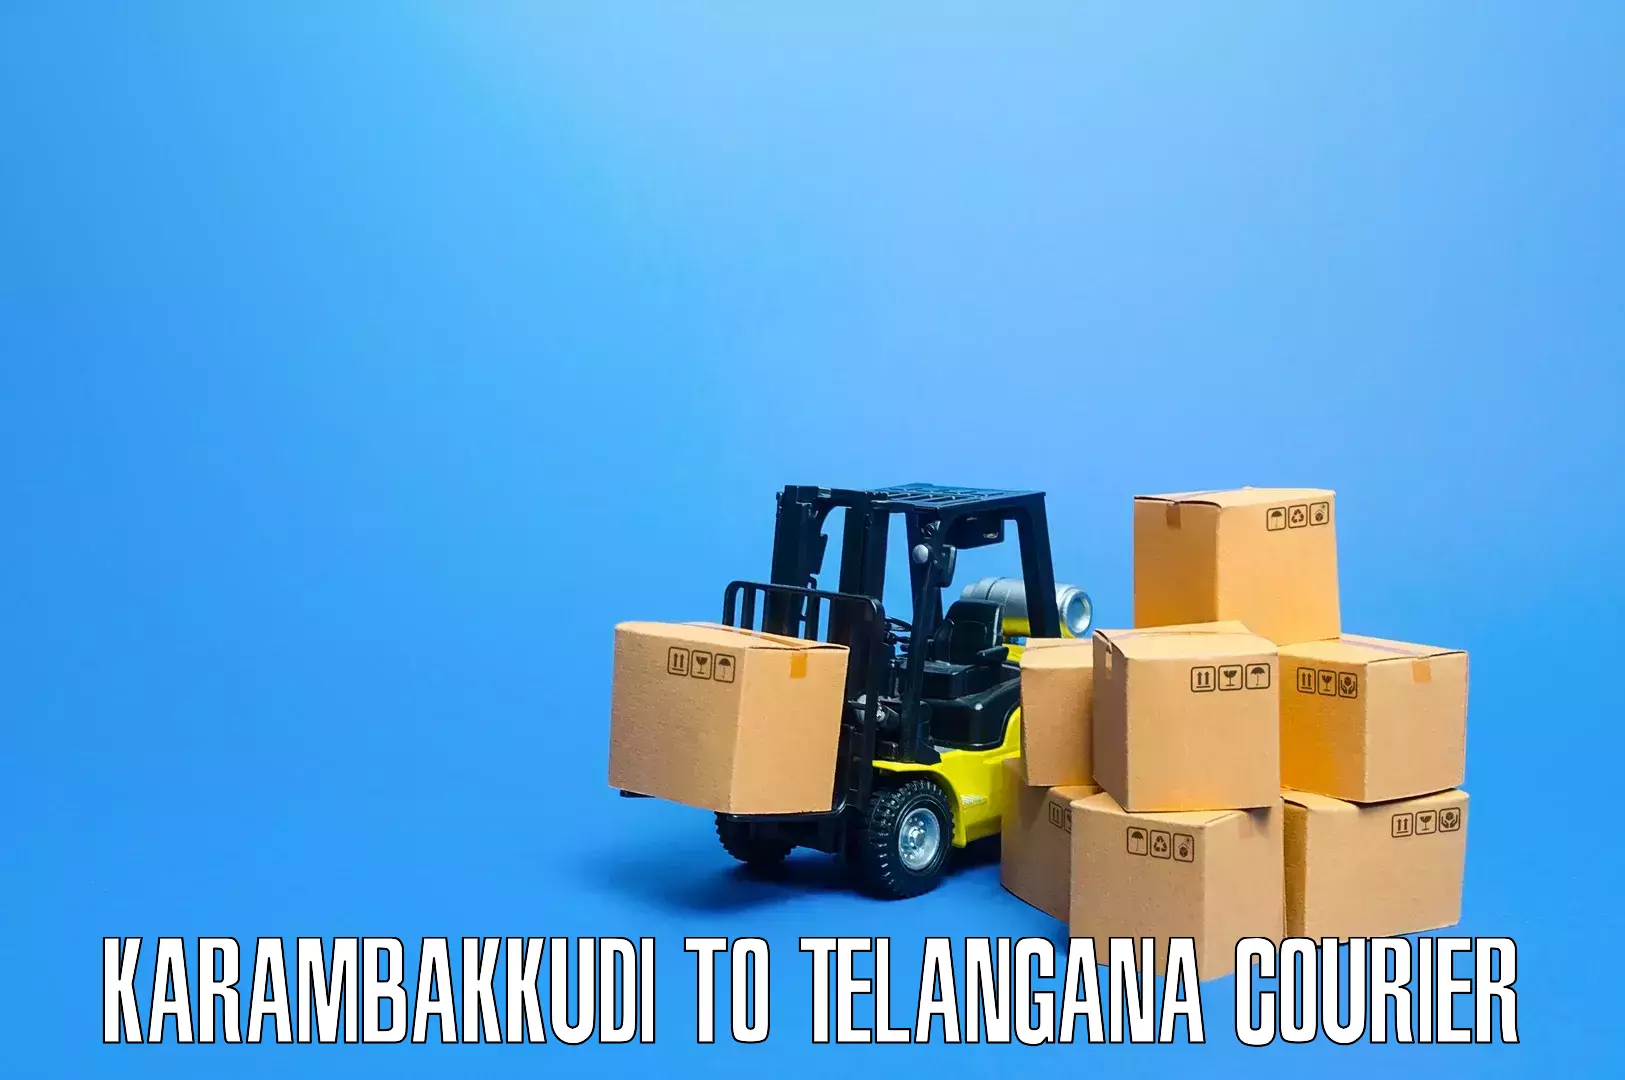 Professional furniture shifting Karambakkudi to Telangana